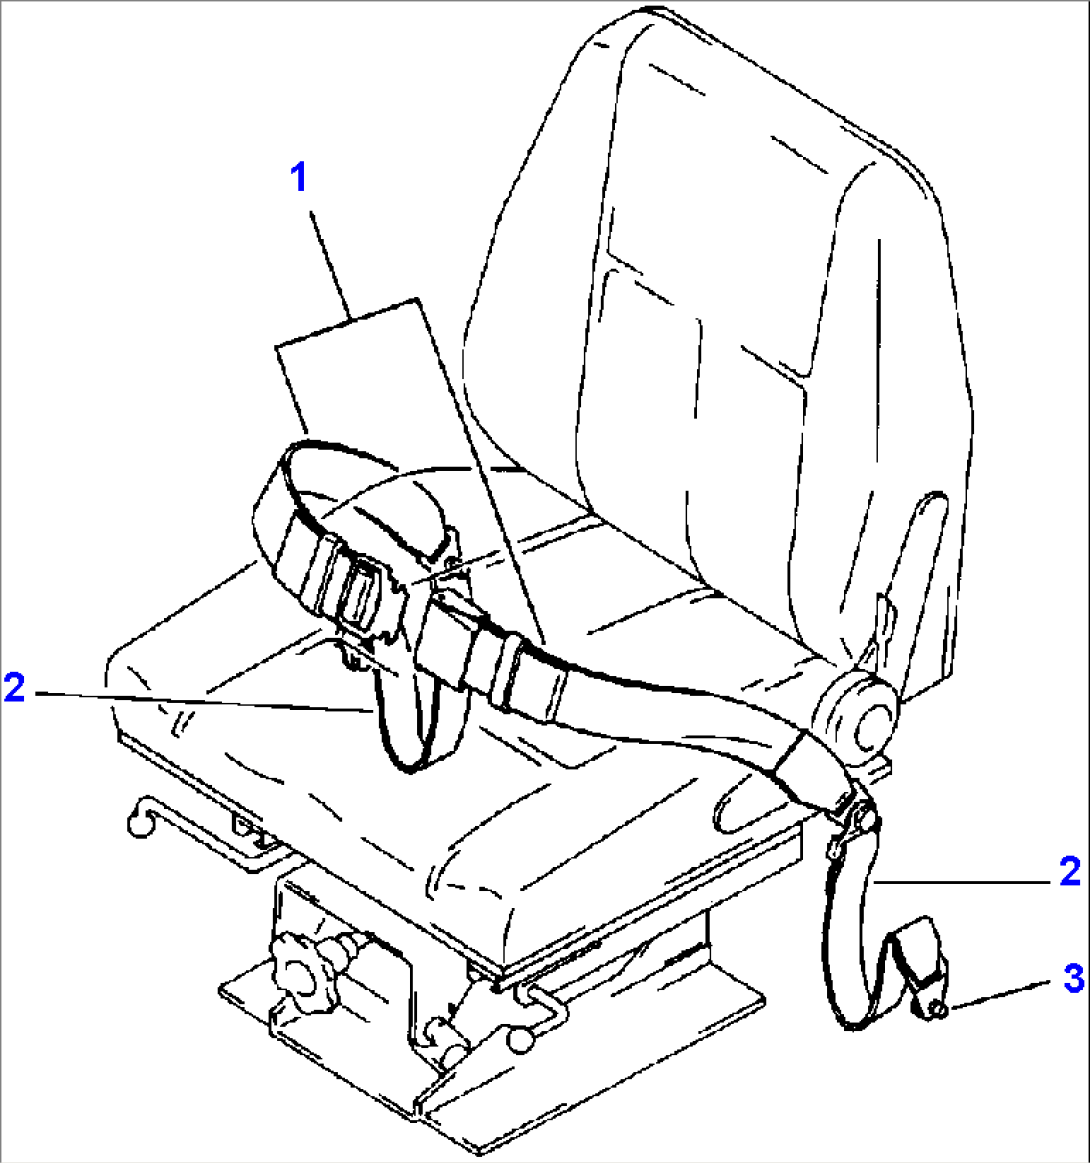 SEAT BELT FOR KOMATSU OR RIGID TYPE SEAT